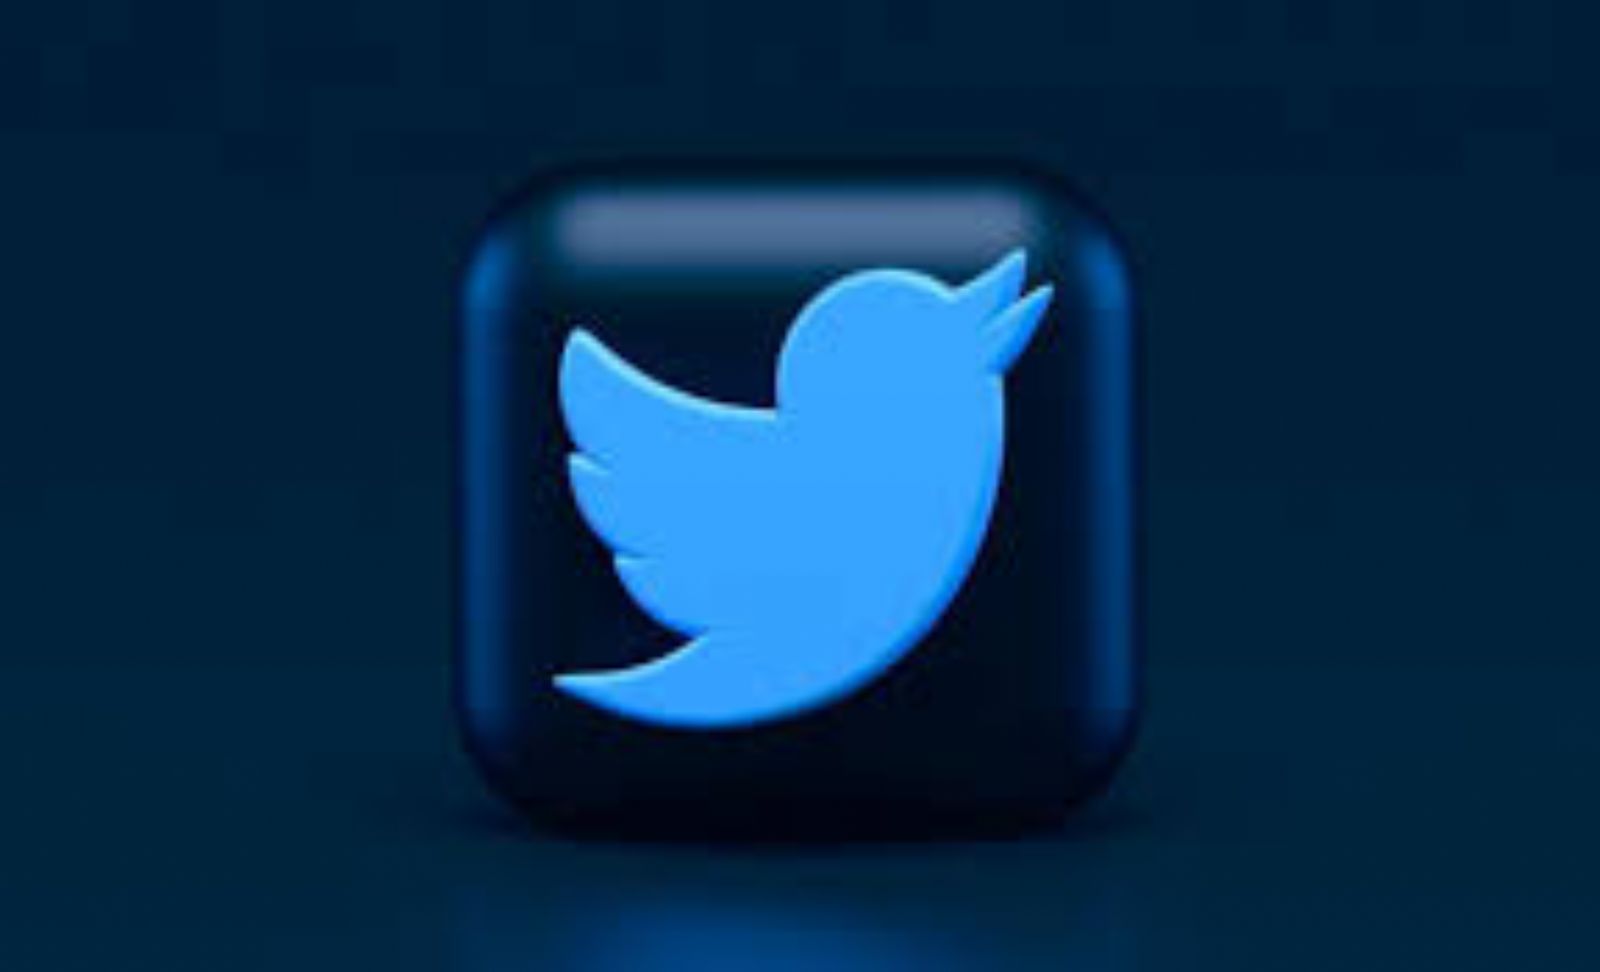 "تويتر" يتخلى عن طموحات طويلة الأمد